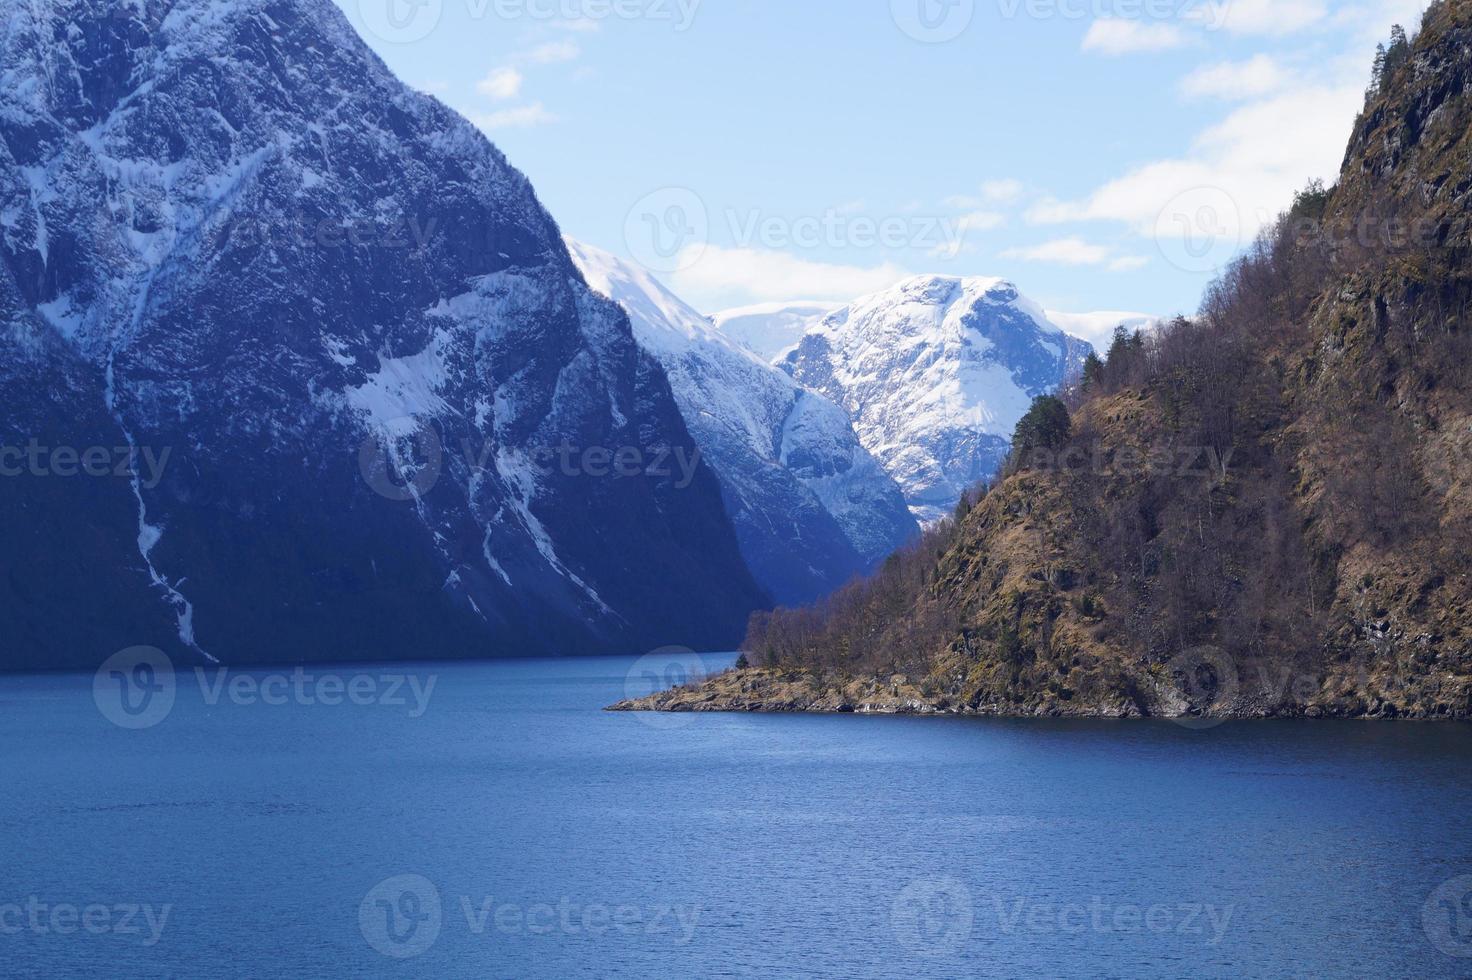 mit einem kreuzfahrtschiff durch den ardalsfjord foto